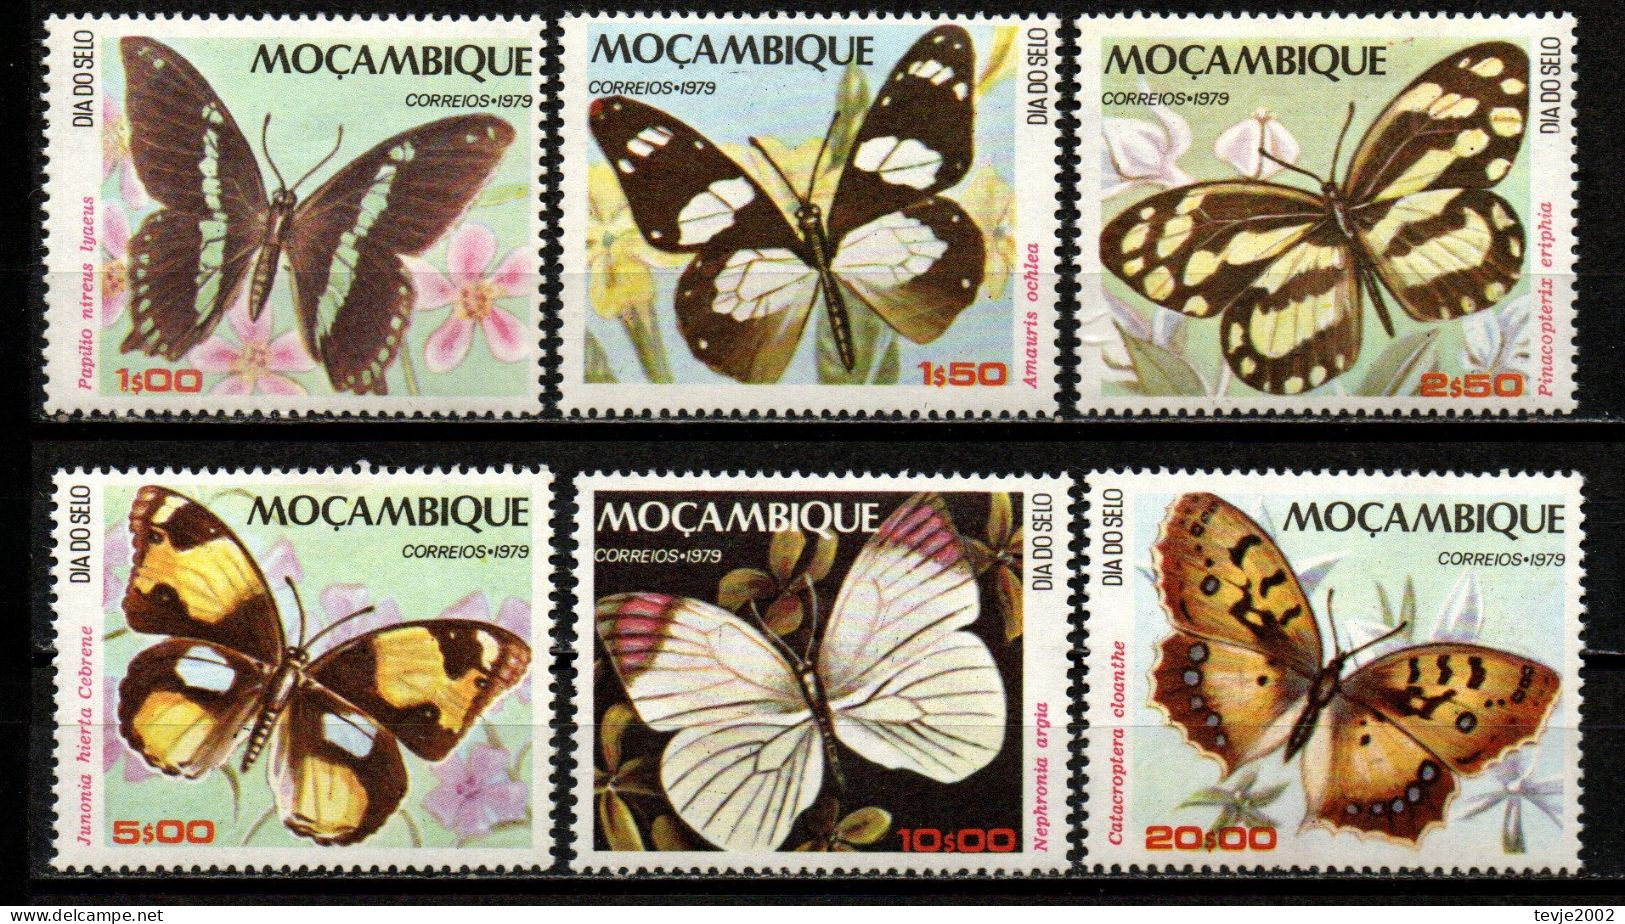 Moçambique 1979 - Mi.Nr. 731 - 736 - Postfrisch MNH - Tiere Animals Schmetterlinge Butterflies - Schmetterlinge